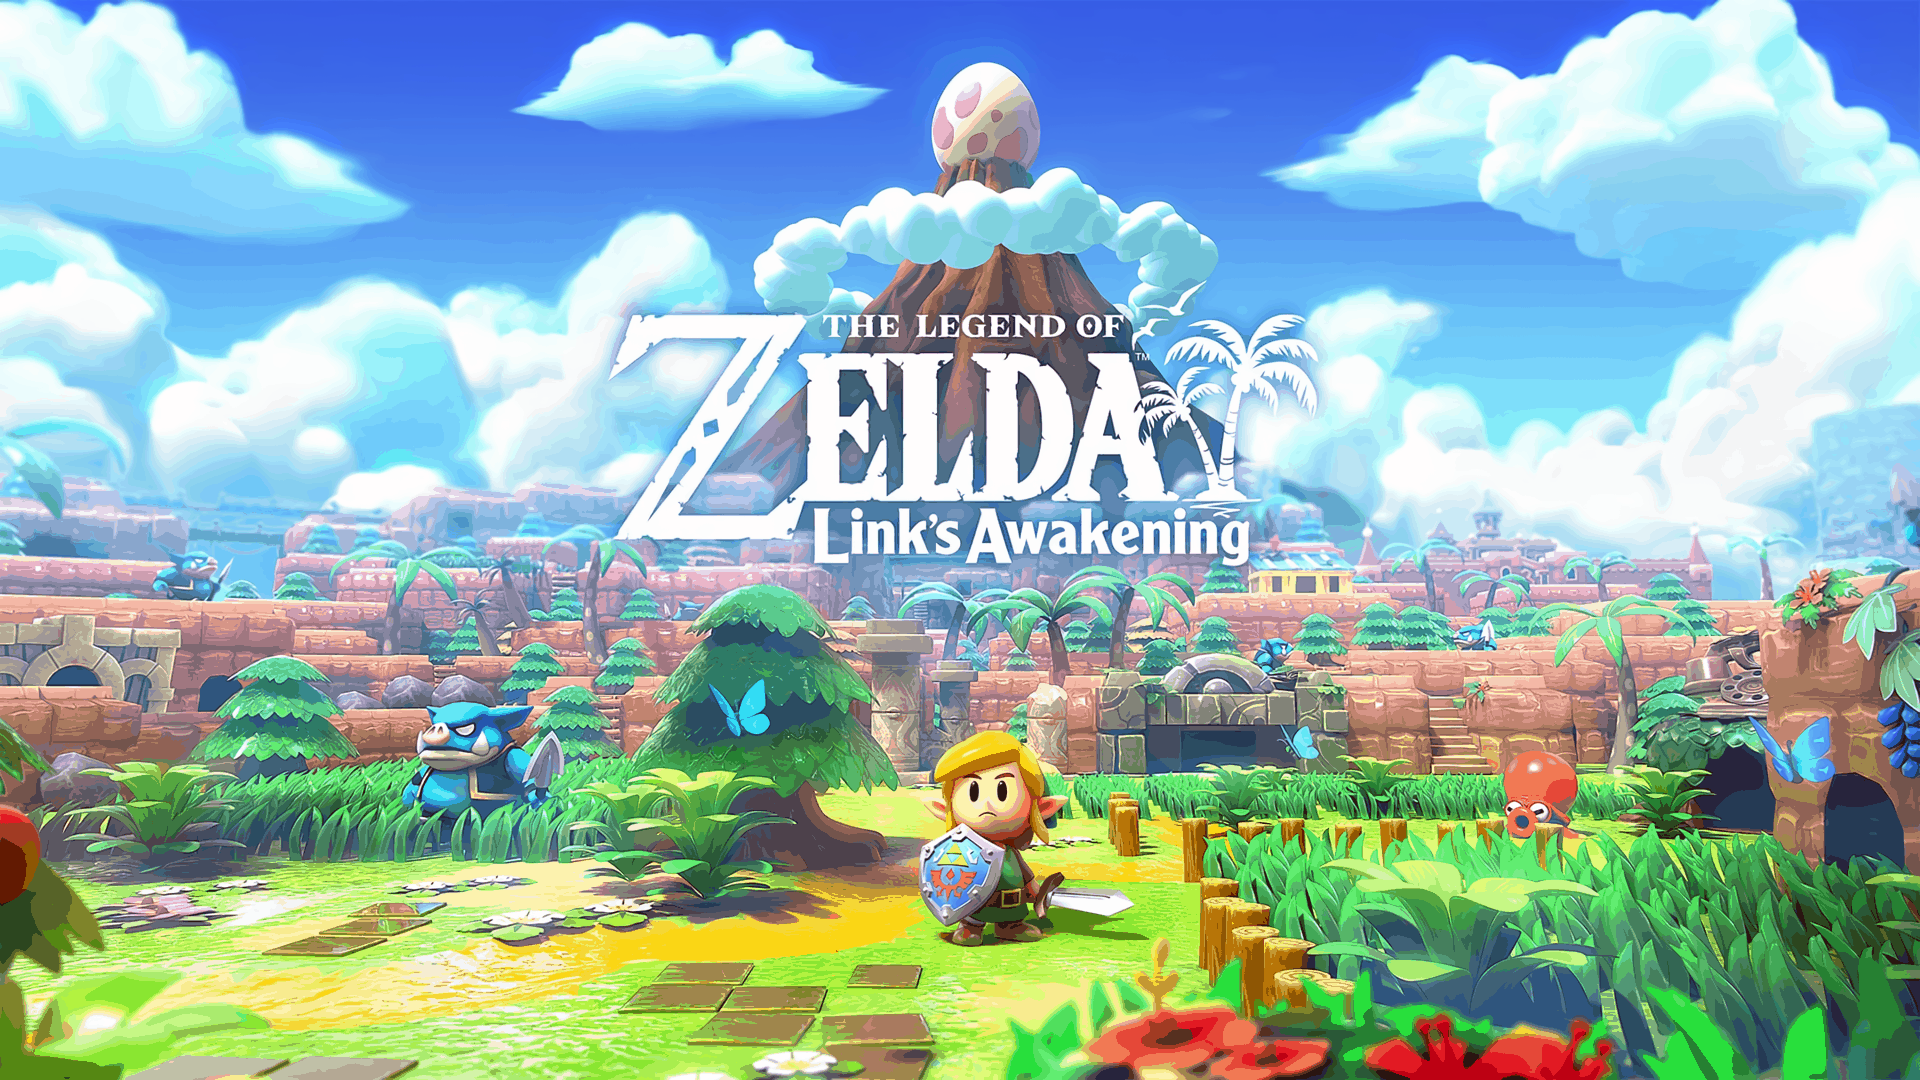 Best Zelda Games - The Legend of Zelda - Link's Awakening